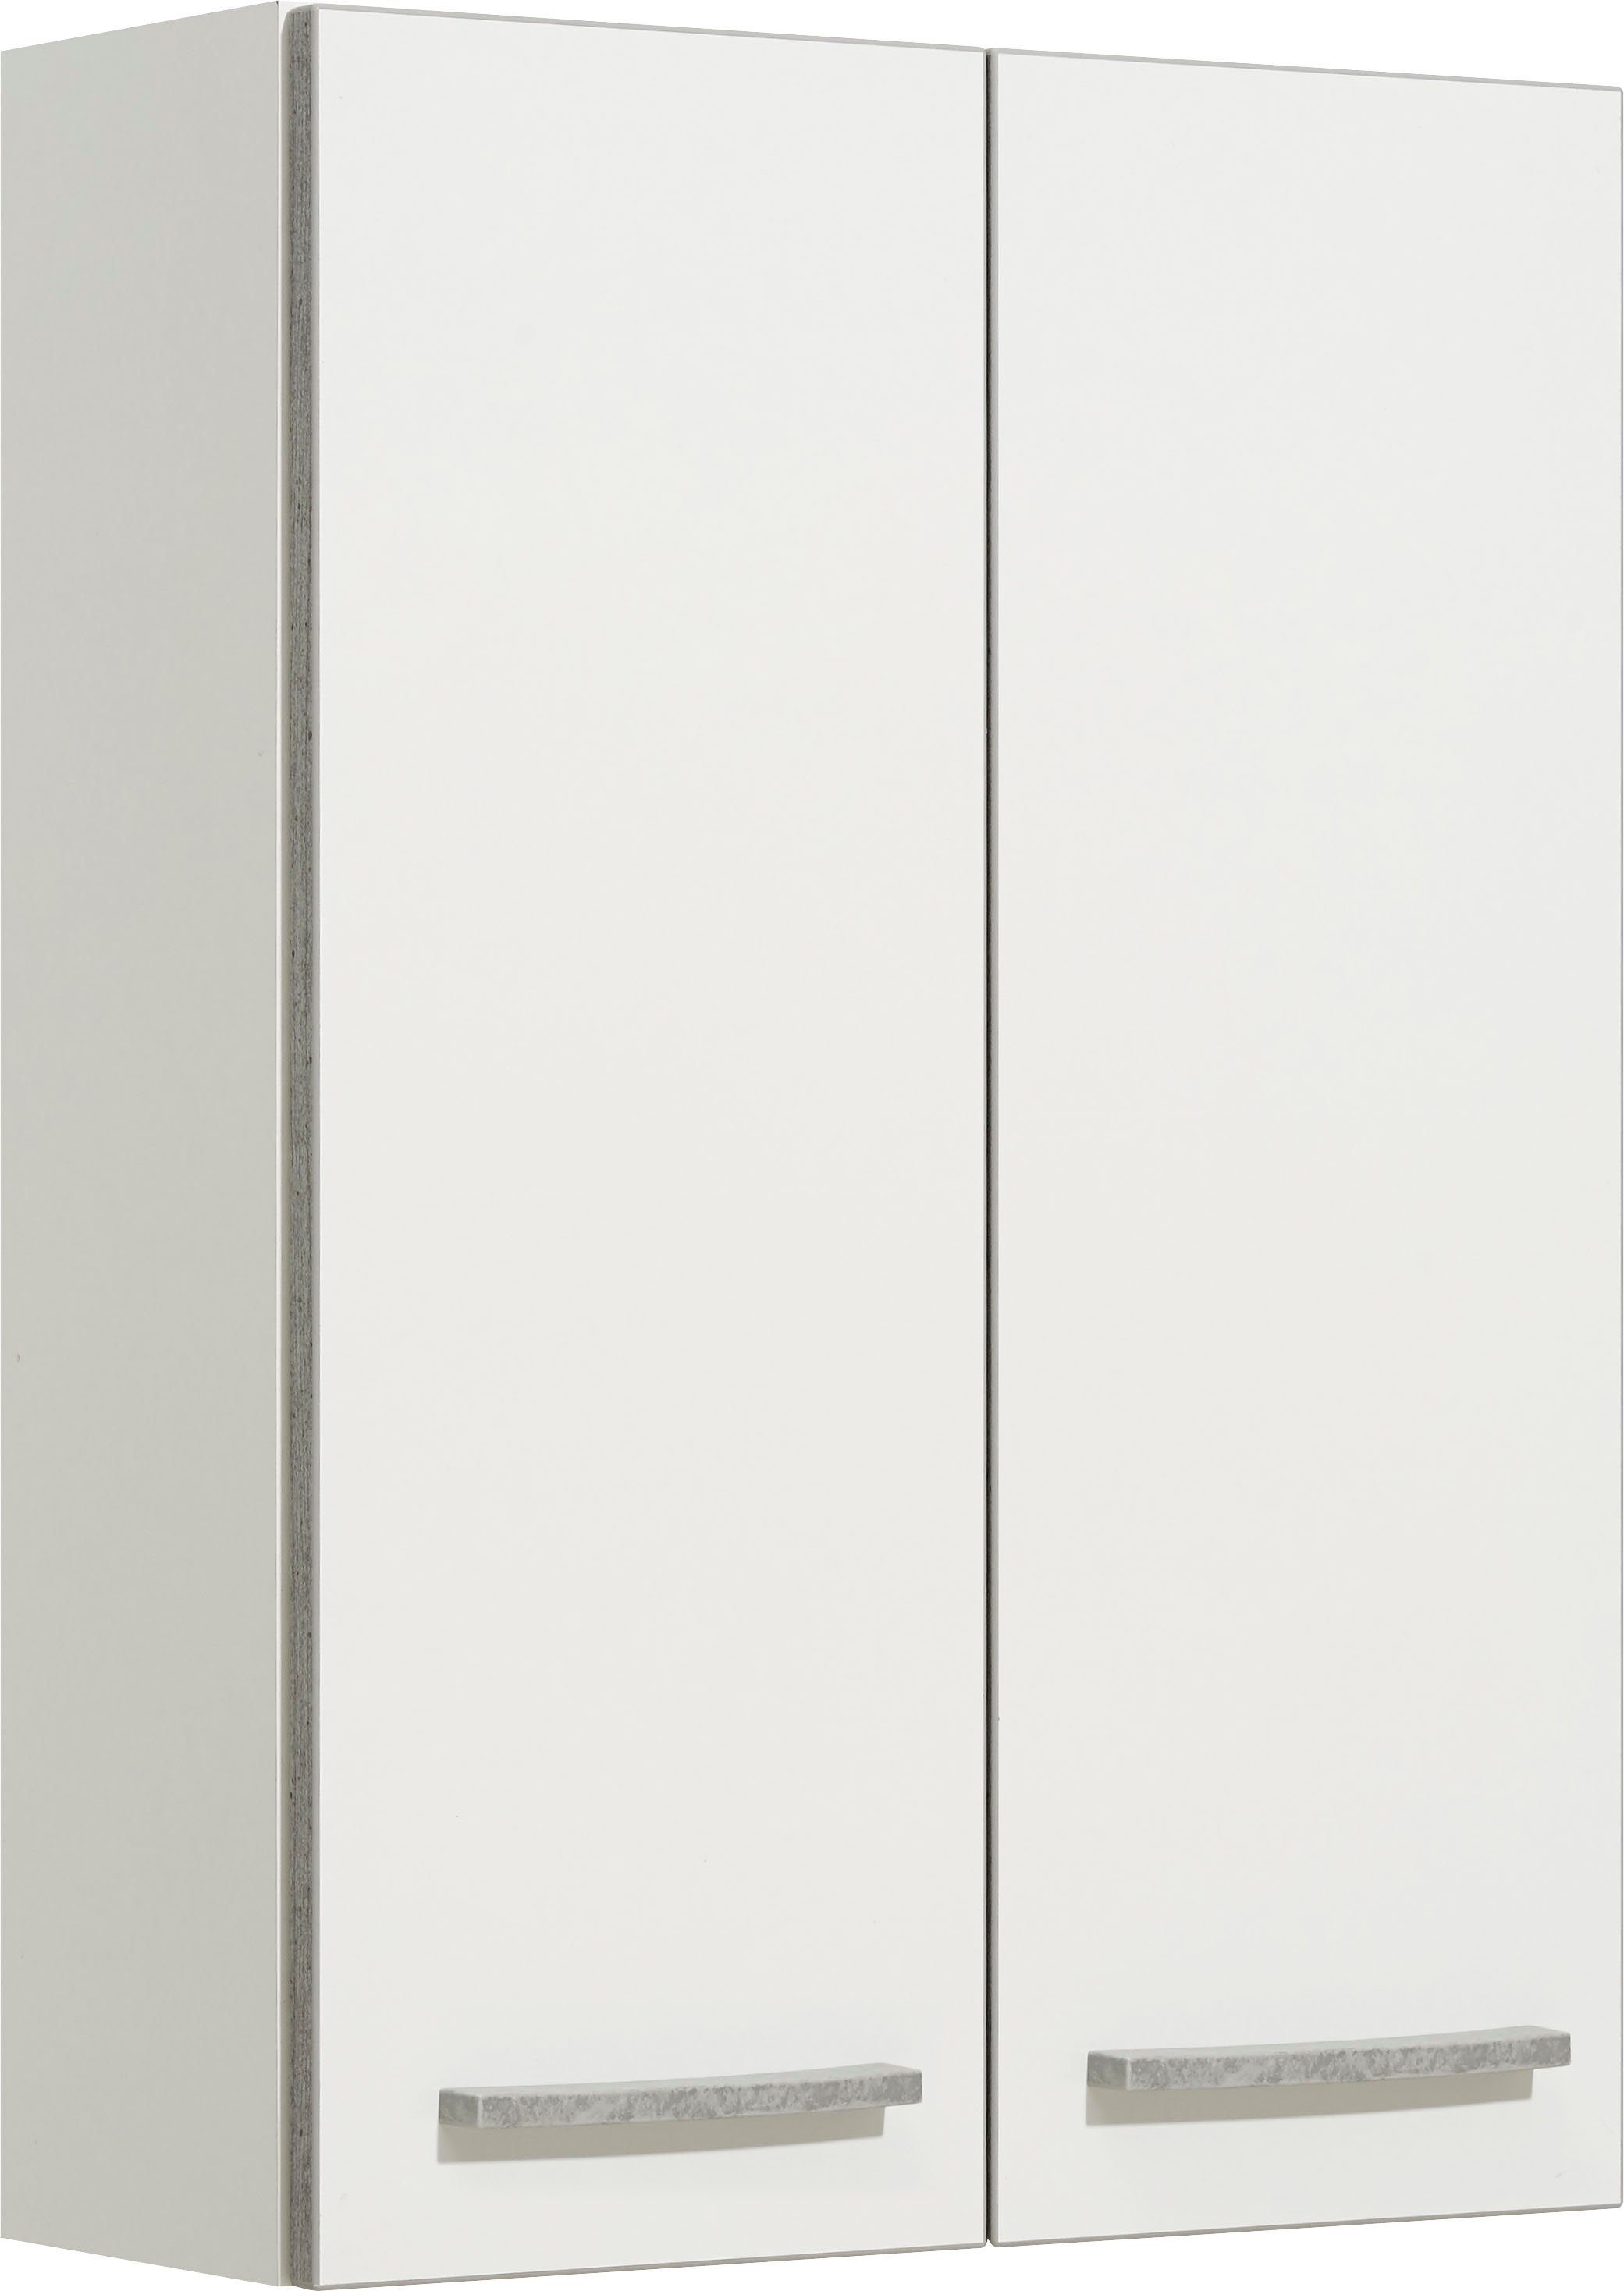 PELIPAL Hangend kastje Quickset 953 Breedte 50 cm, 2 losse planken, garnering in beton-look